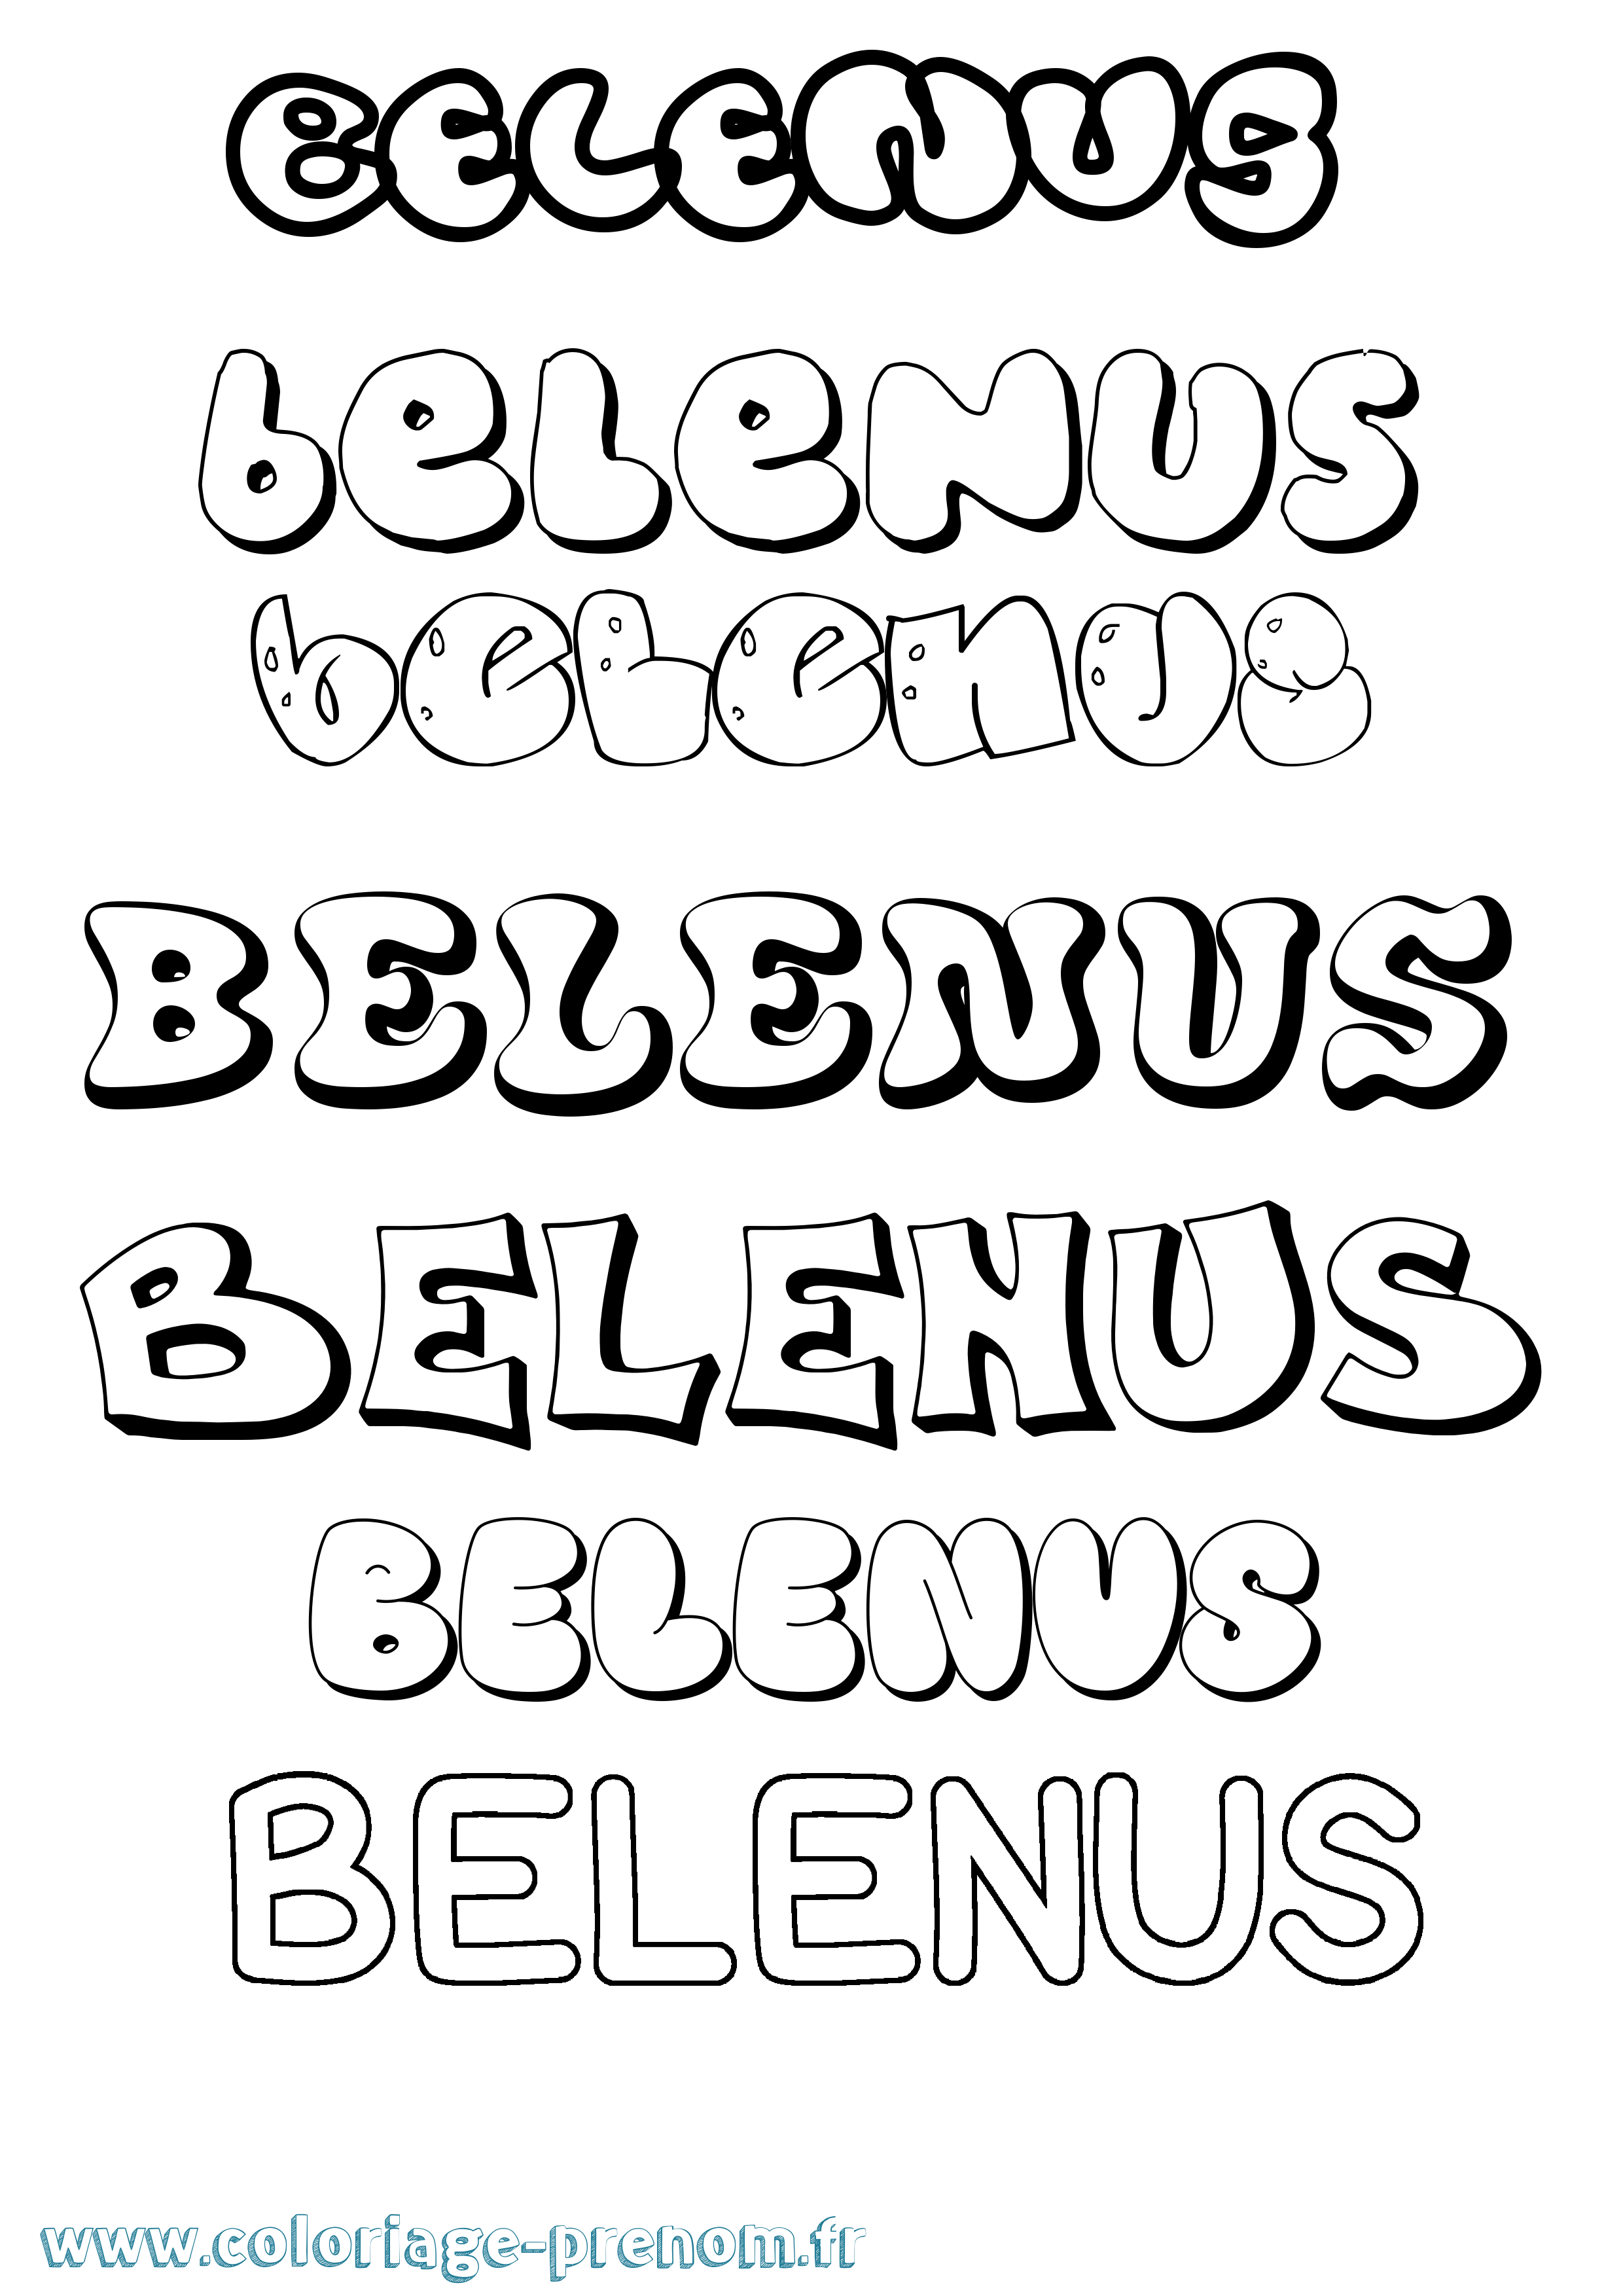 Coloriage prénom Belenus Bubble